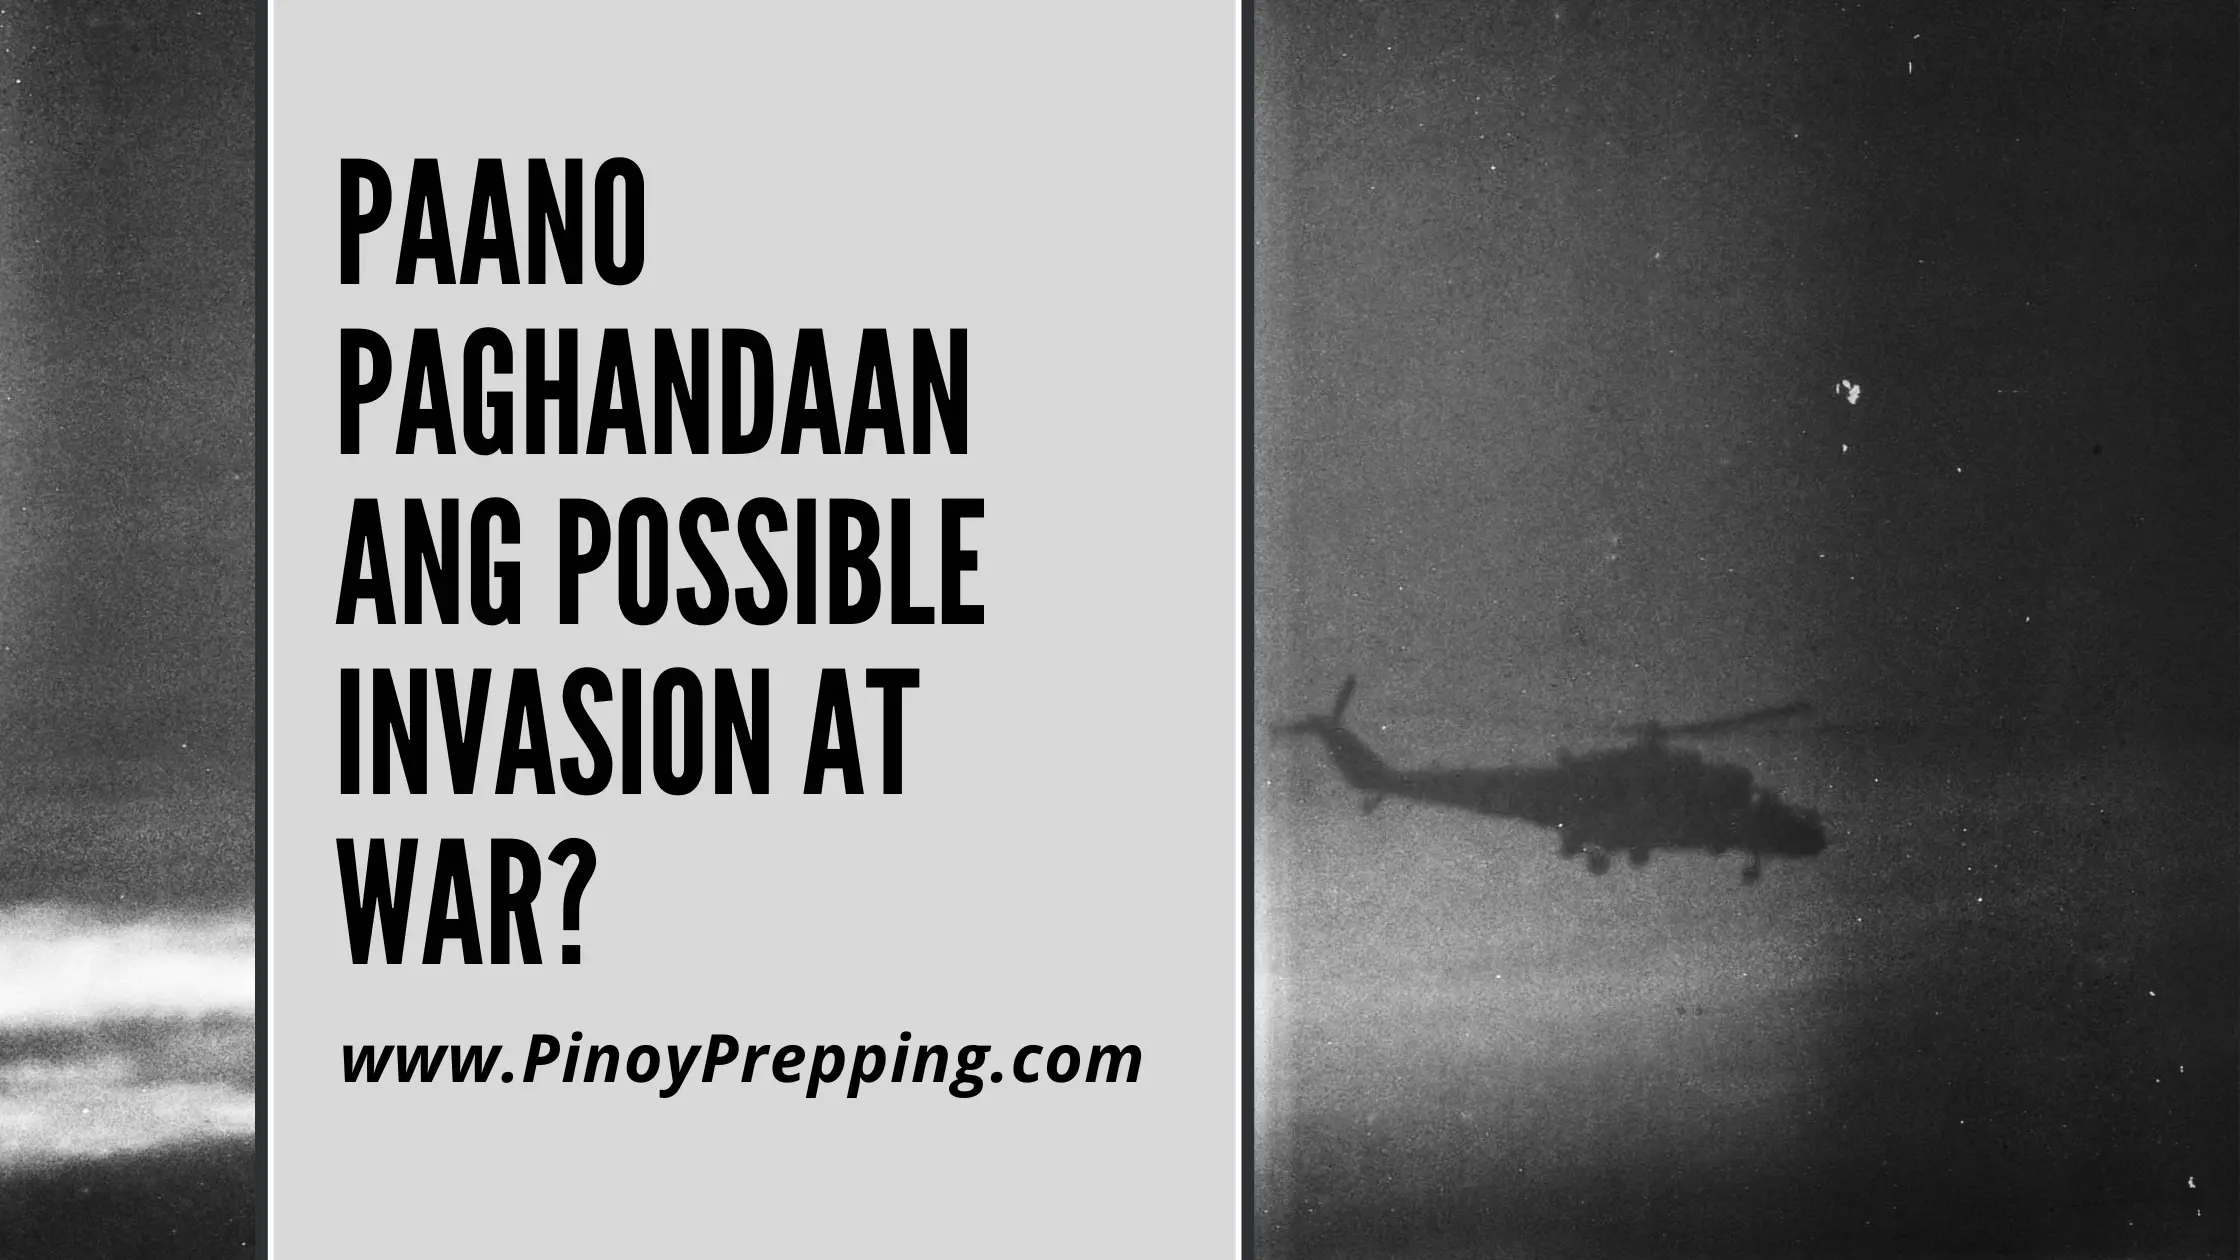 Paano paghandaan ang possible invasion at war?